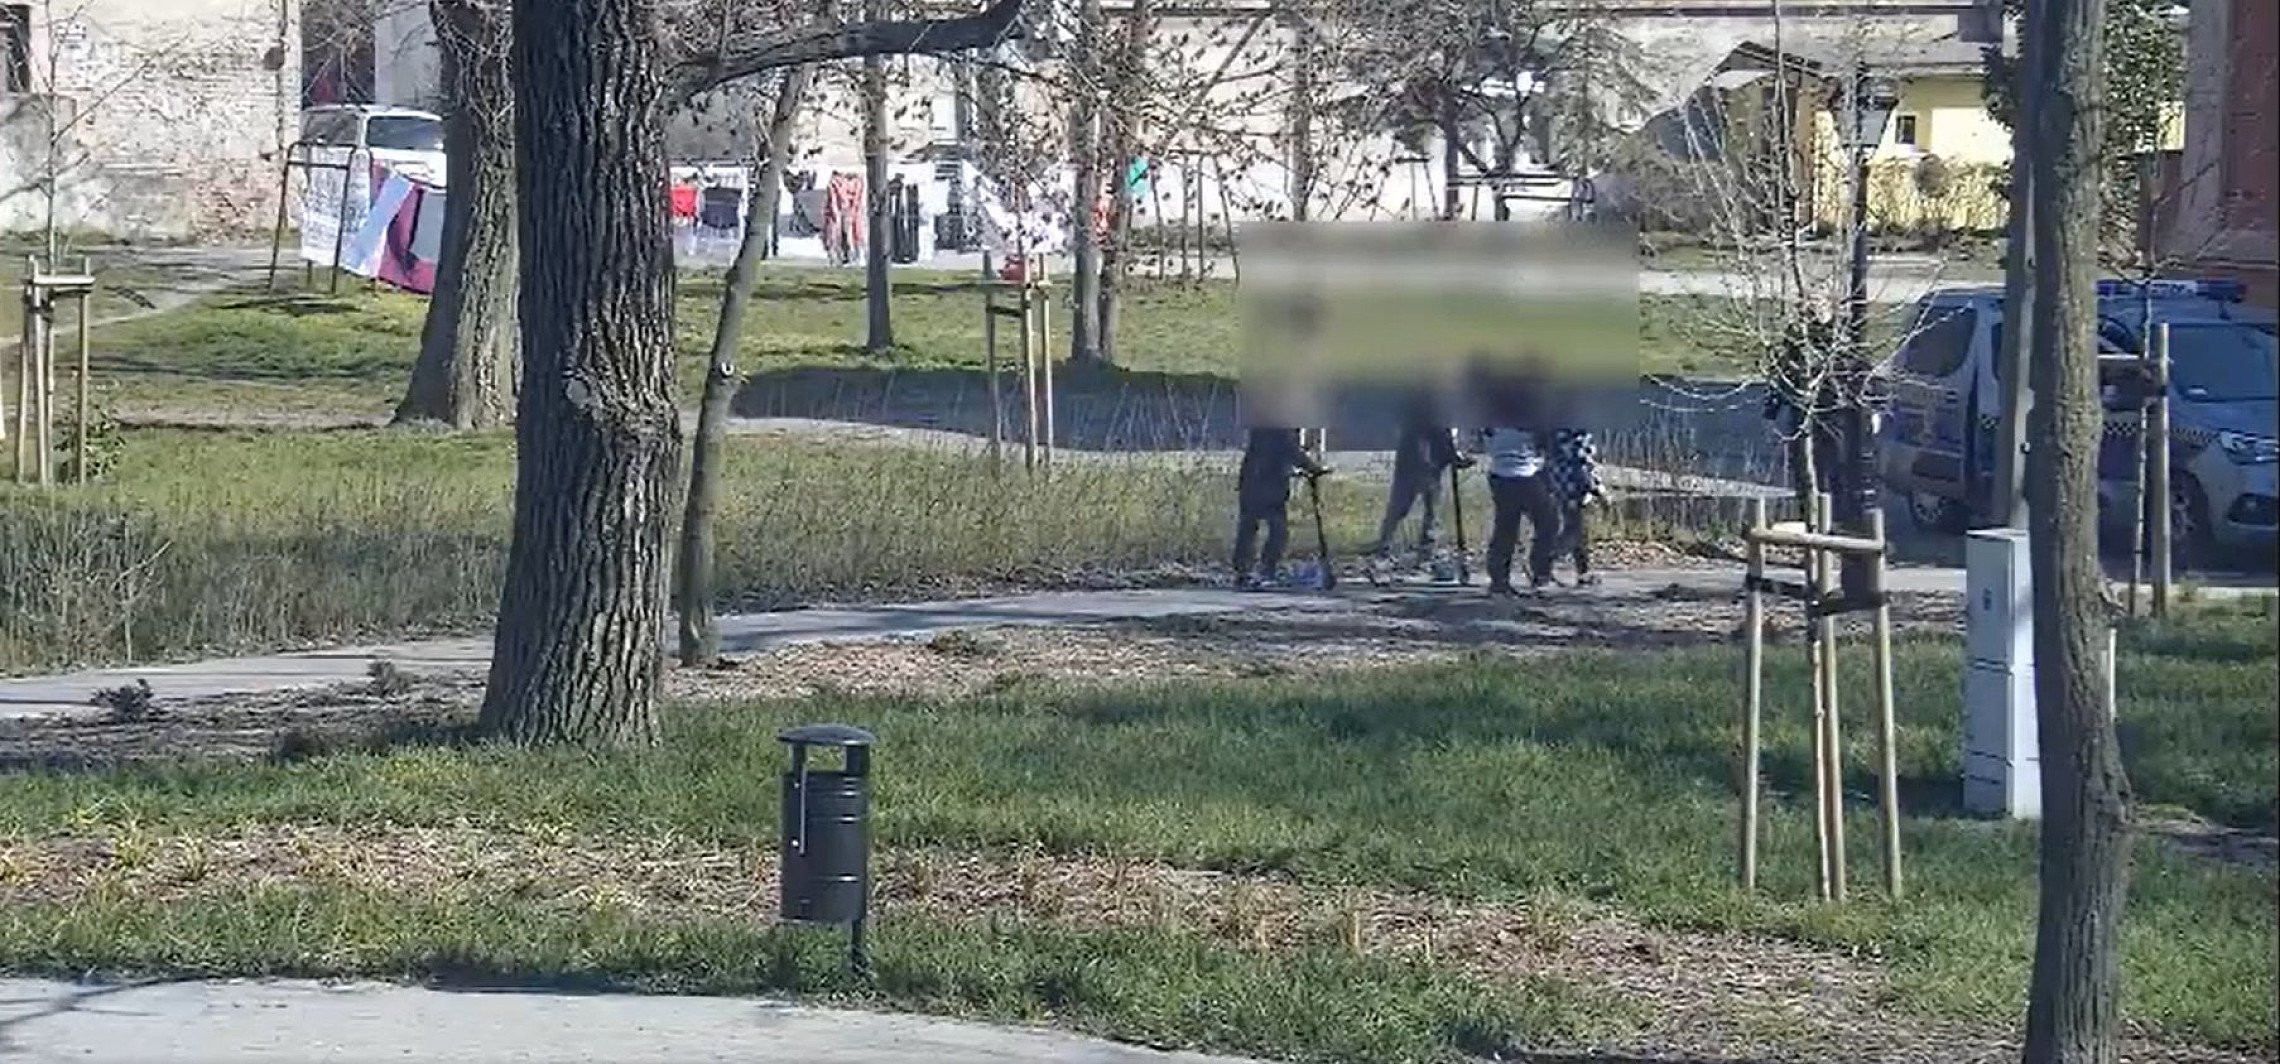 Inowrocław - Dzieci bawiły się parku. Interweniowali strażnicy